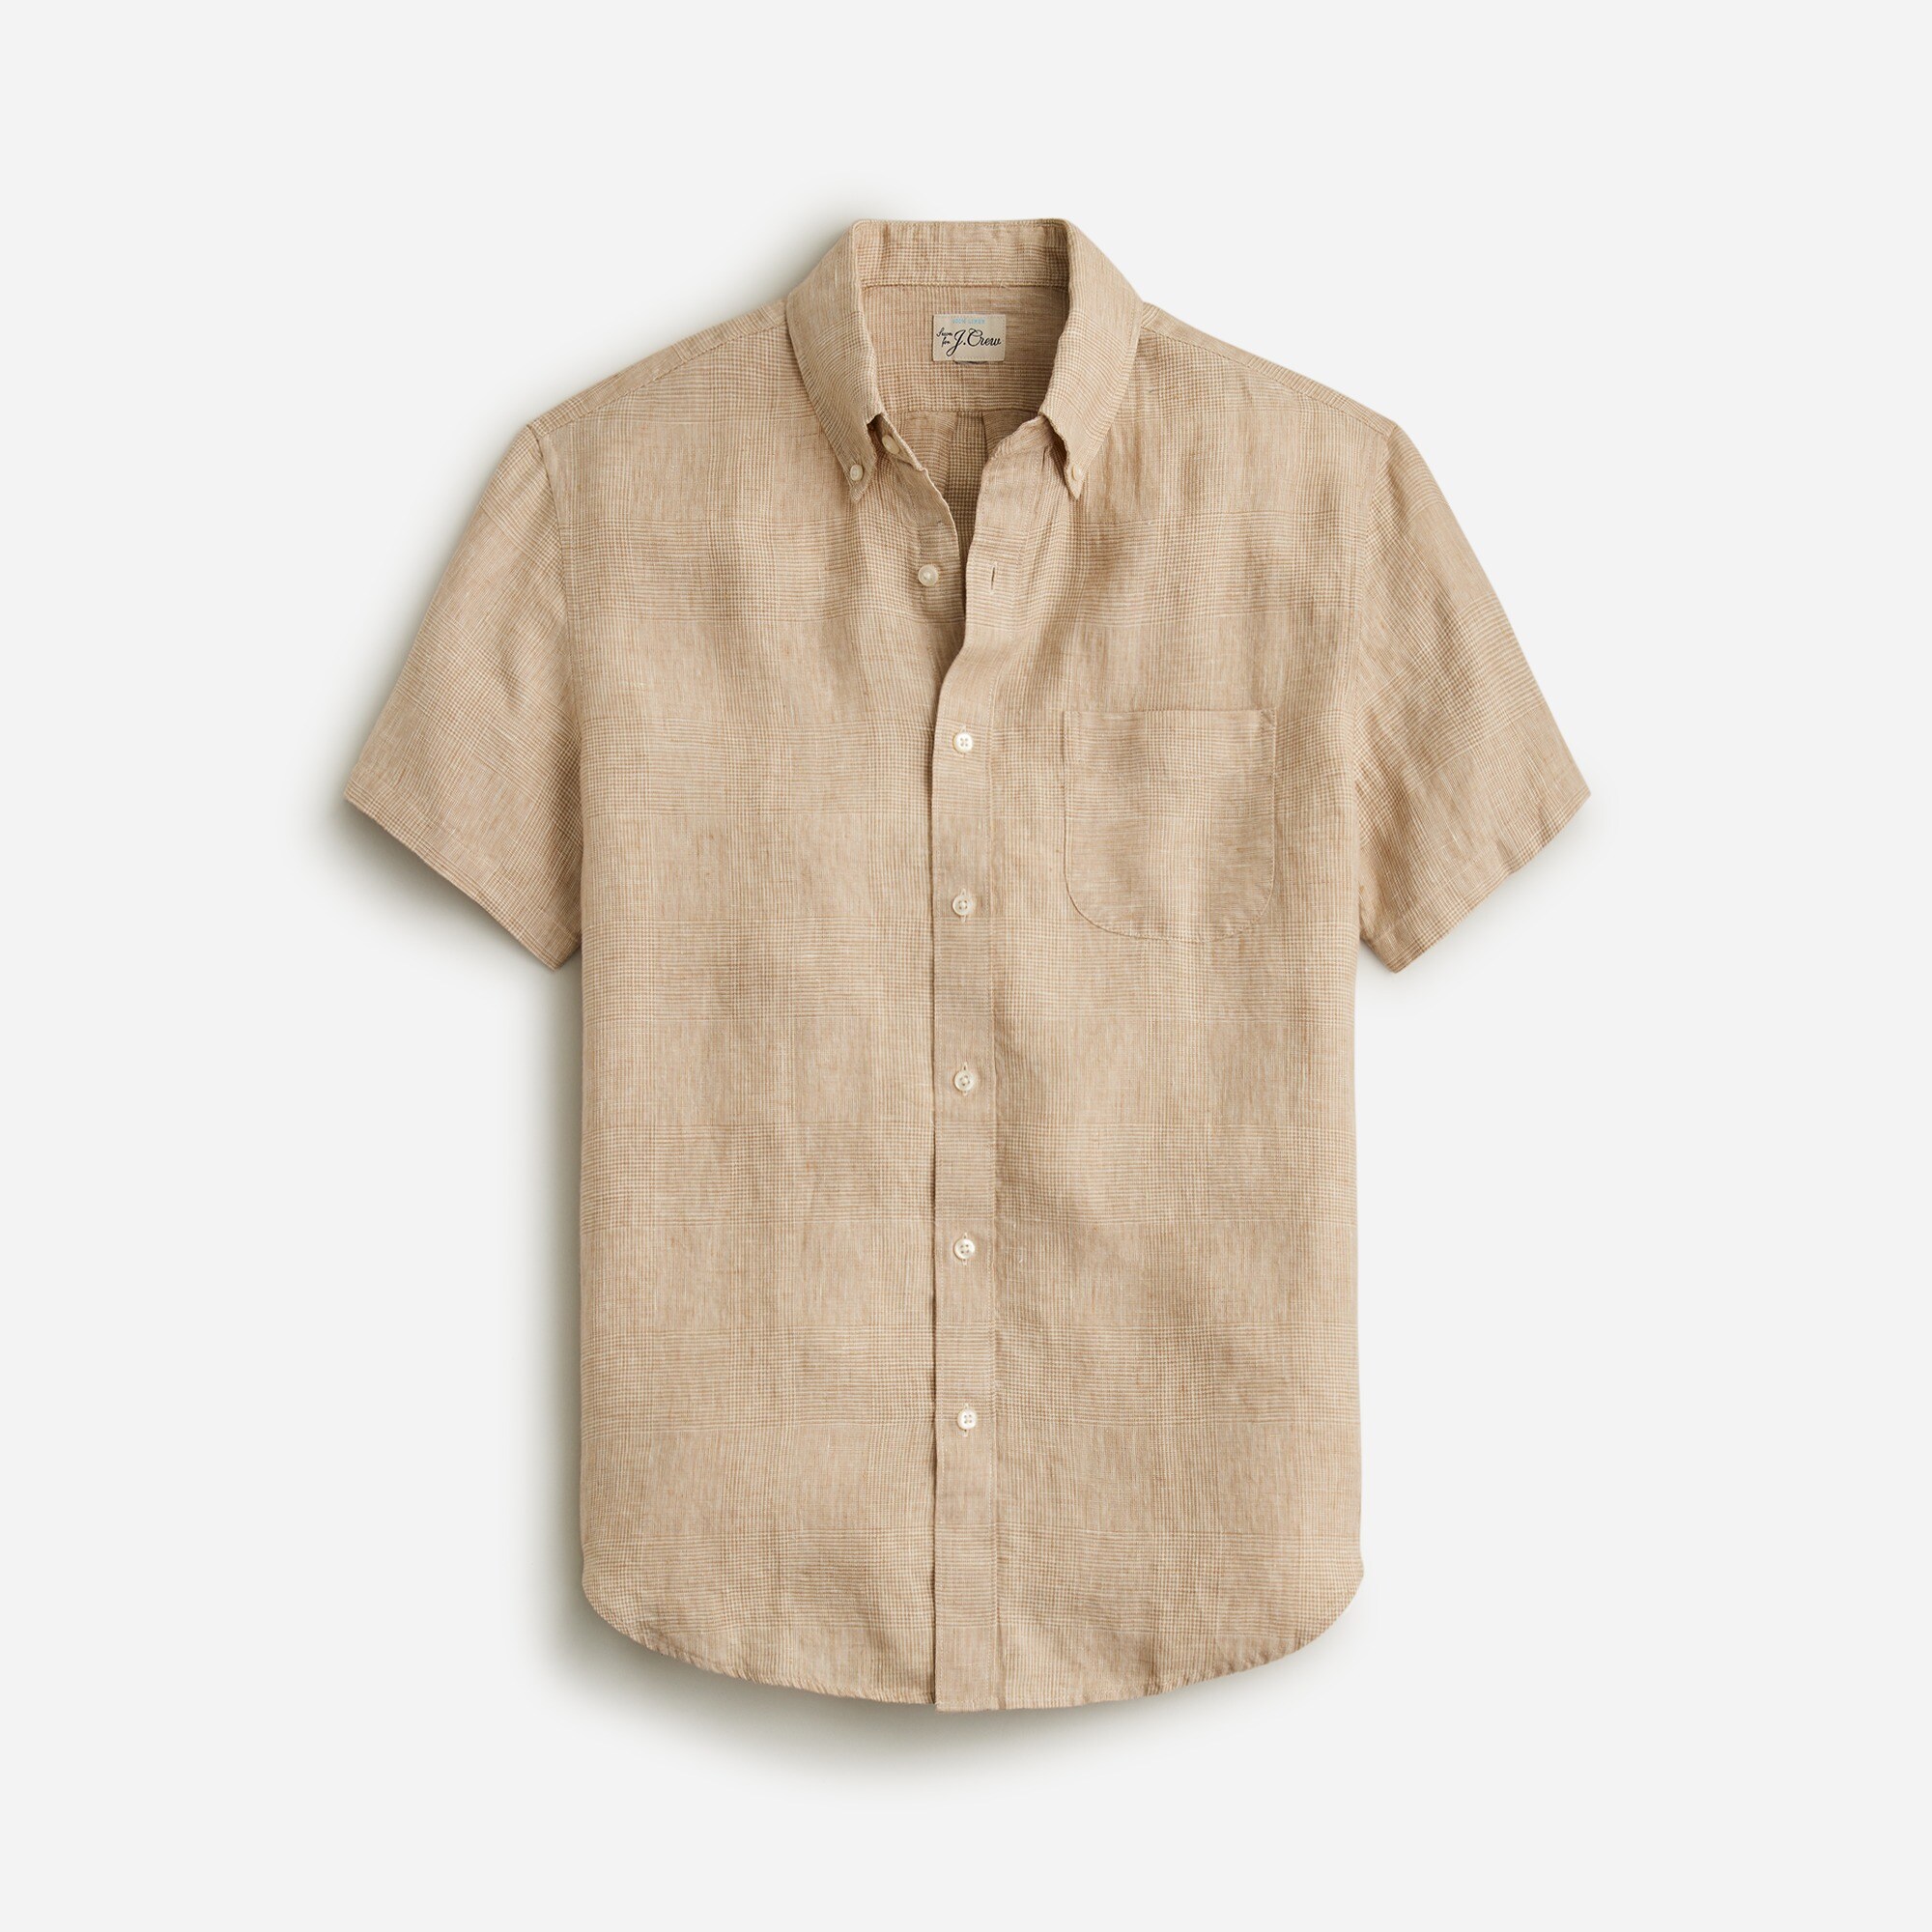  Short-sleeve linen shirt in print